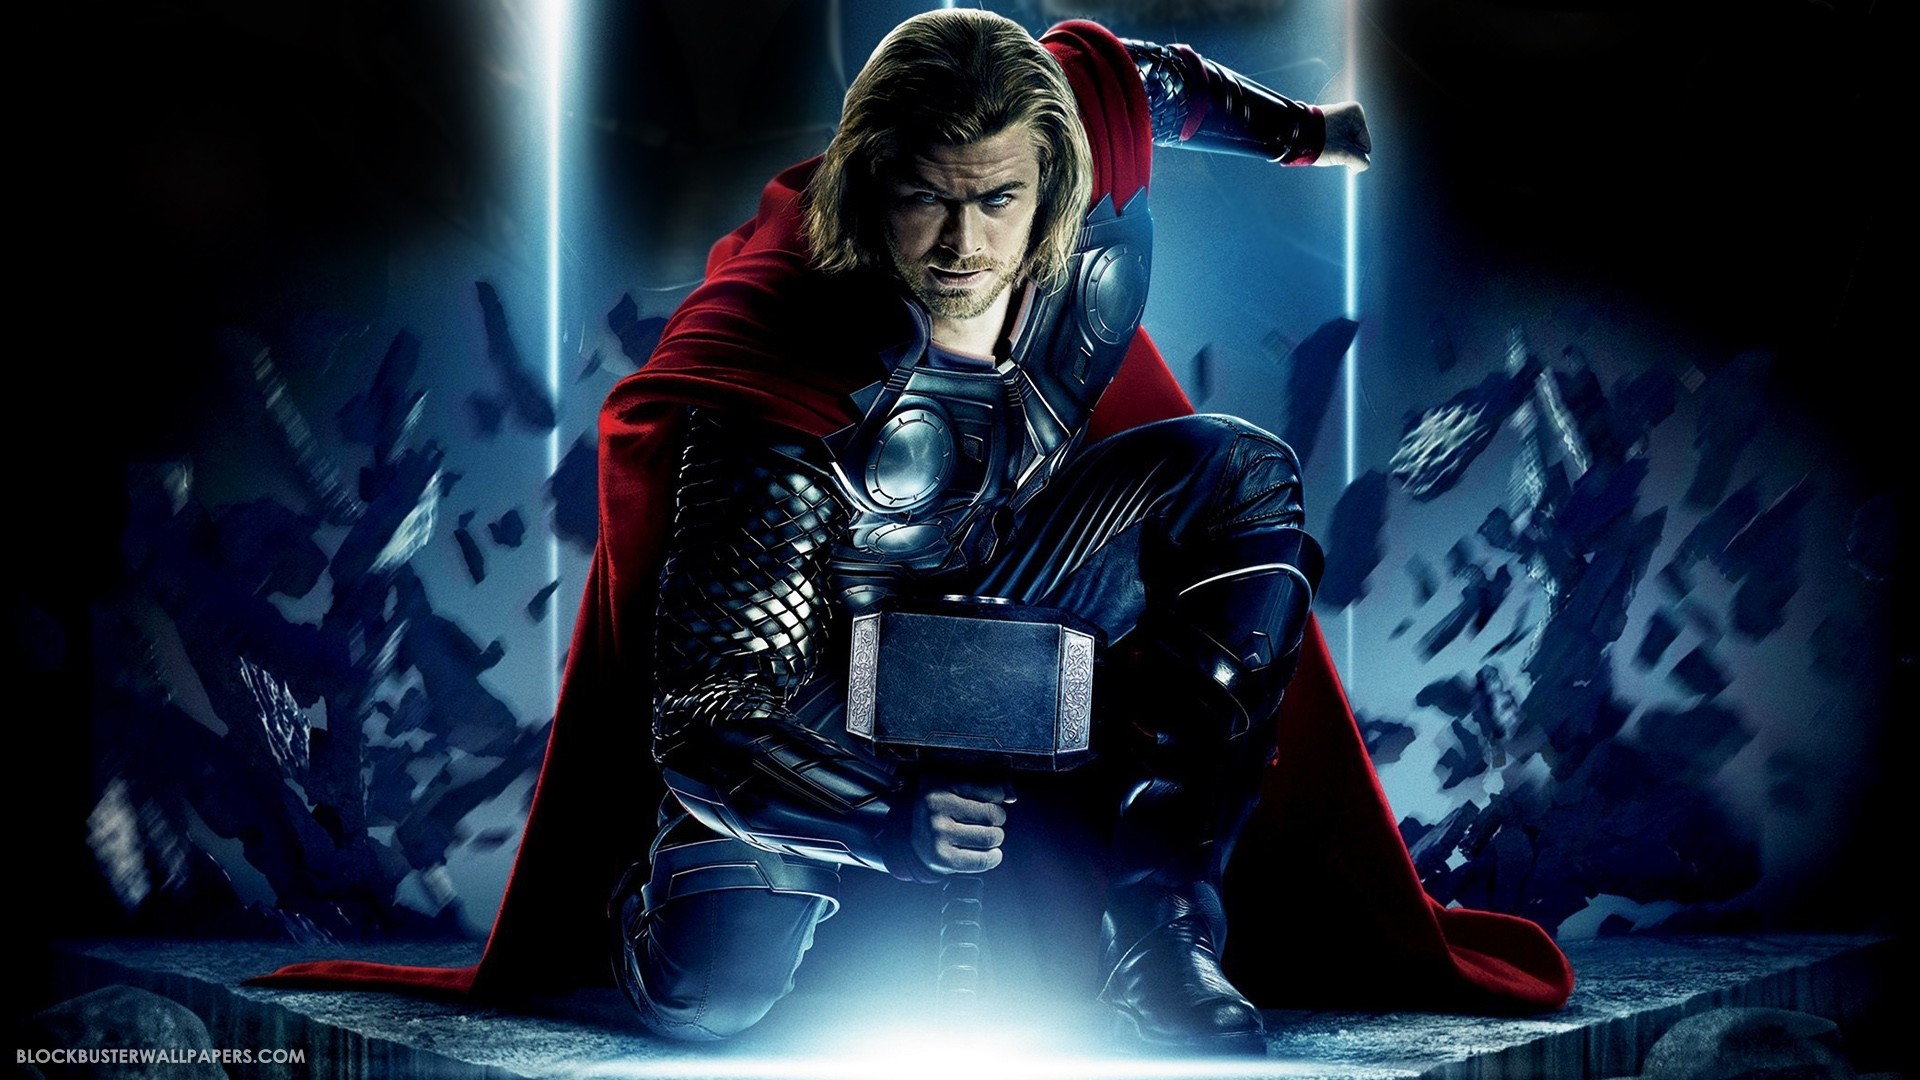 Thor cast